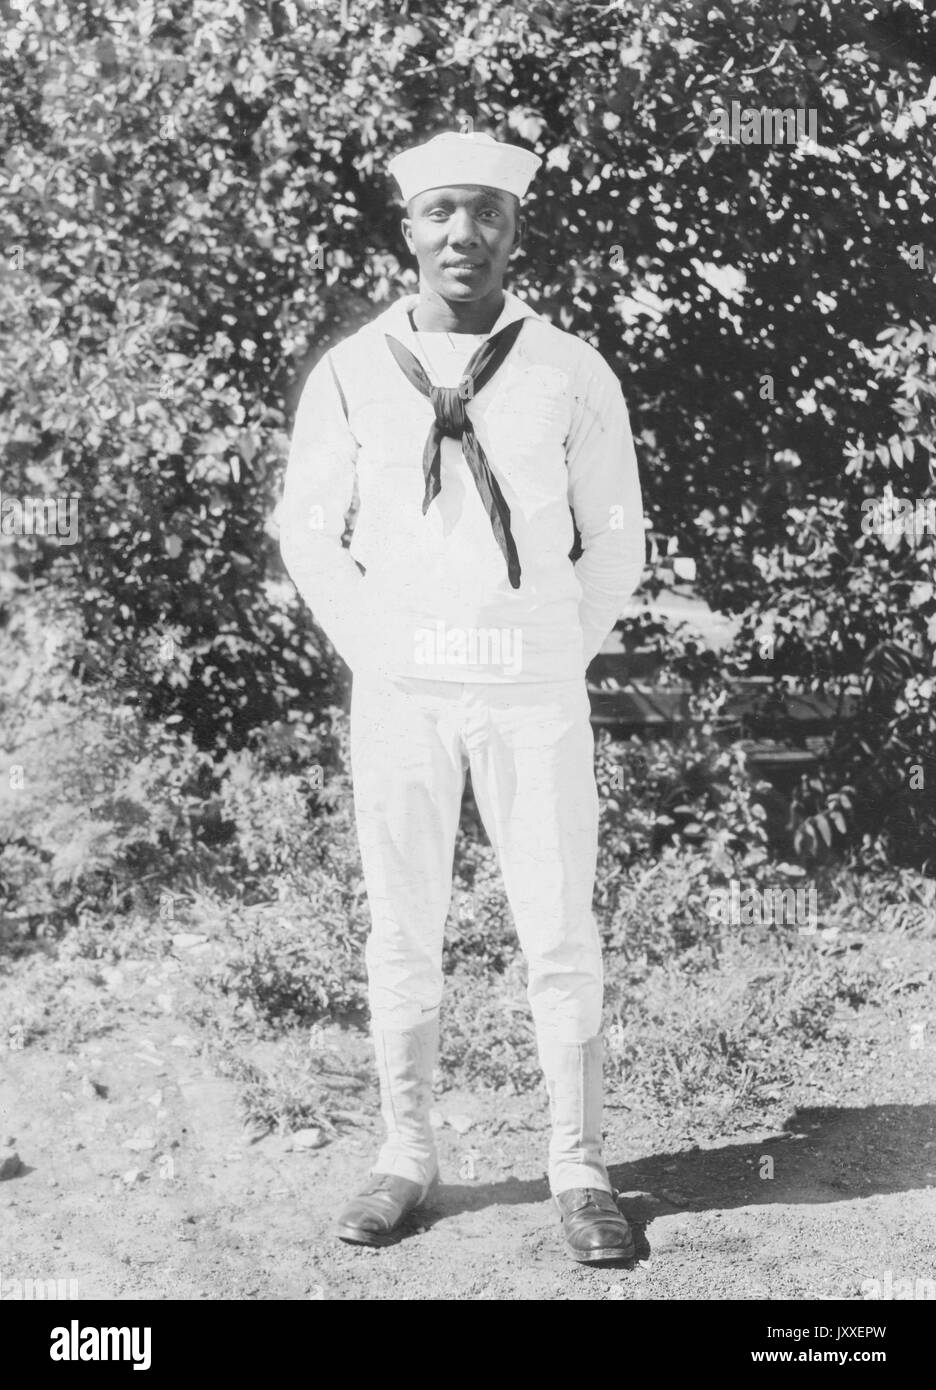 Porträt eines African American US Navy Sailor vor Gebüsch stehend, Hände sind hinter seinem Rücken versteckt und er trägt eine helle Sailor Uniform, 1920. Stockfoto